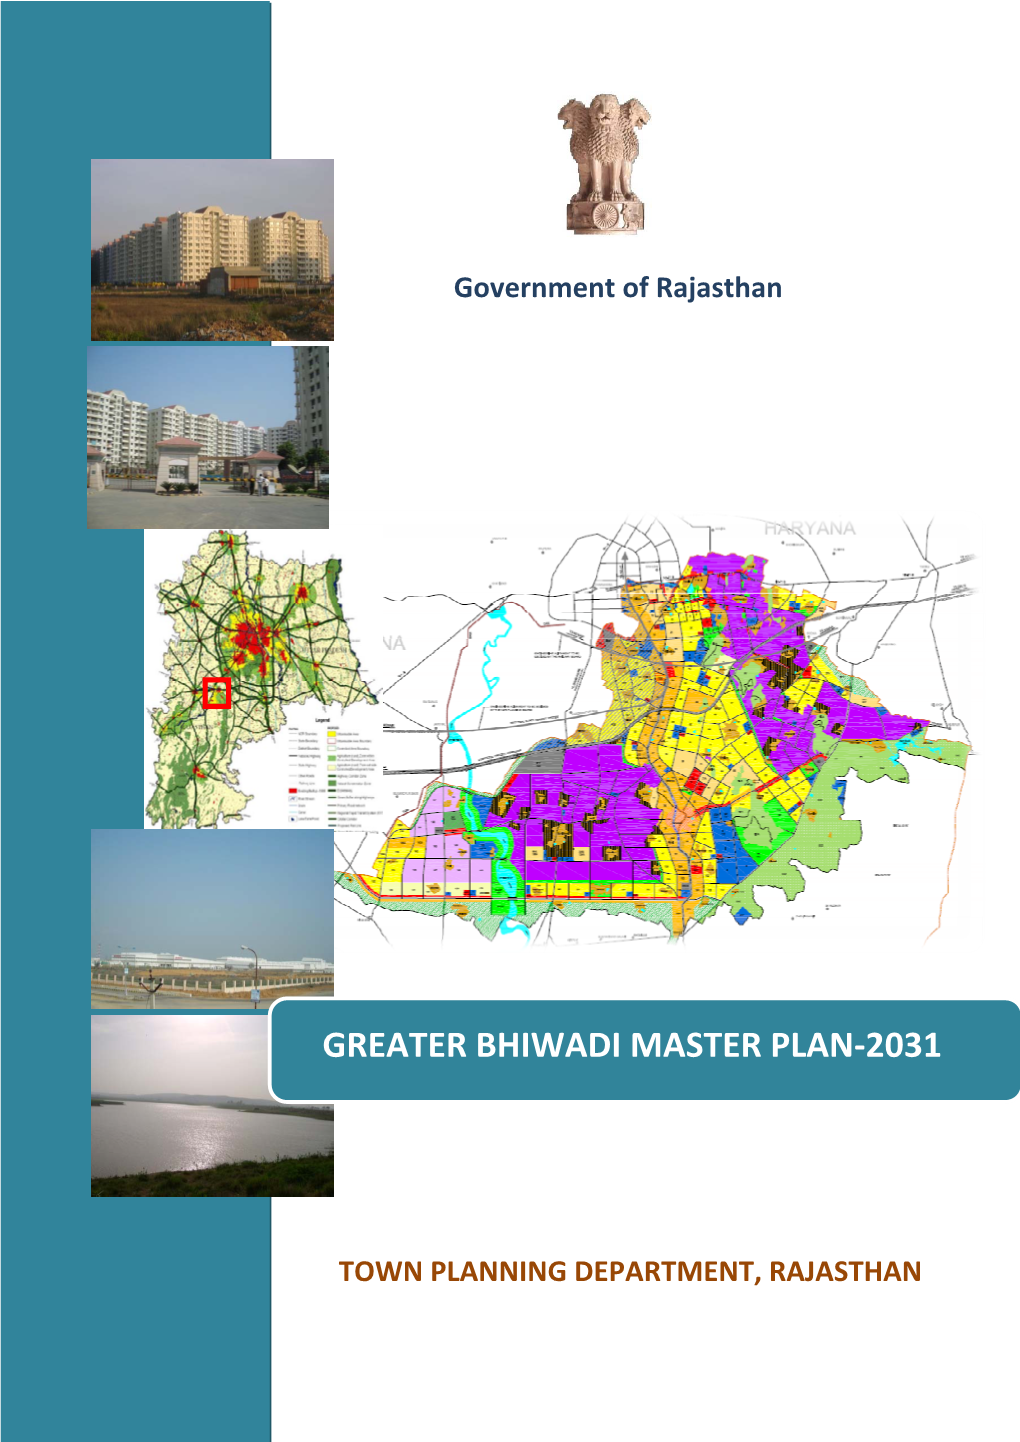 Greater Bhiwadi Master Plan-2031